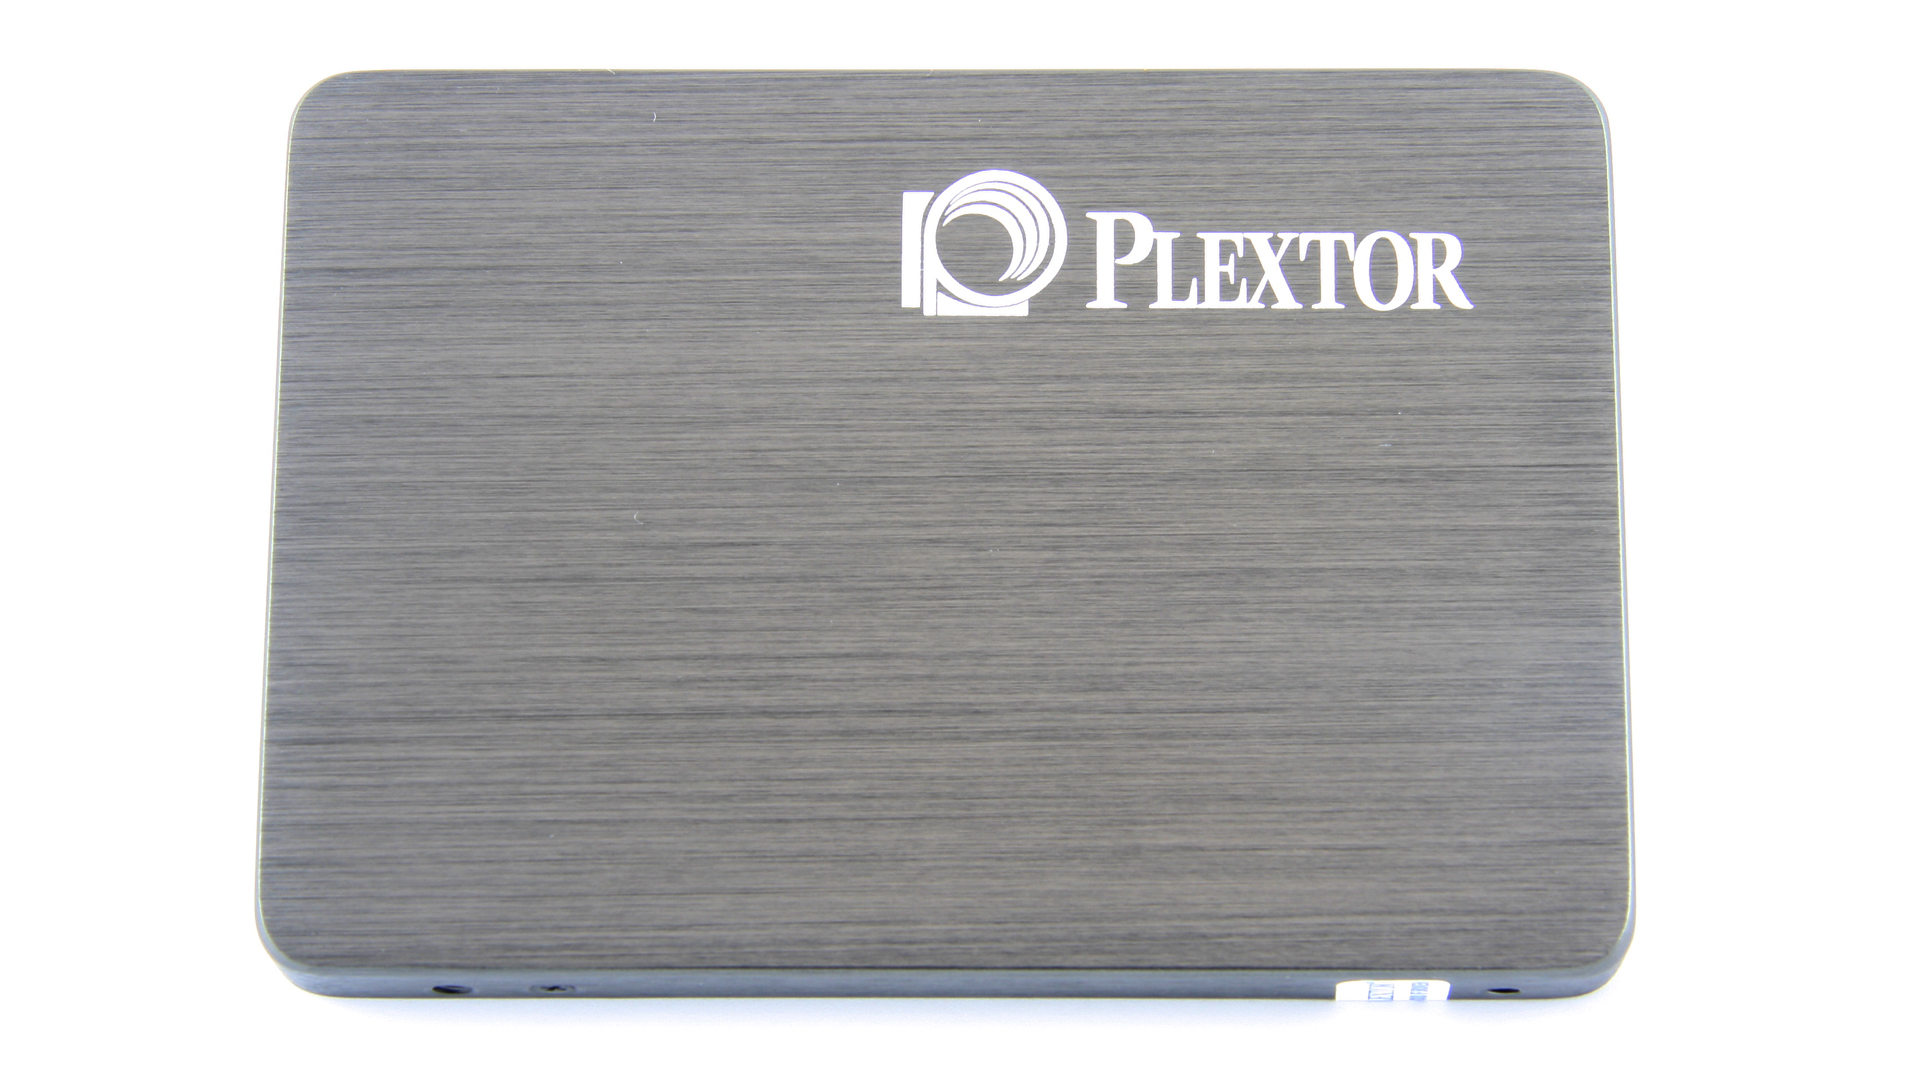 Sembra che il produttore di SSD Plextor stia andando nella tomba